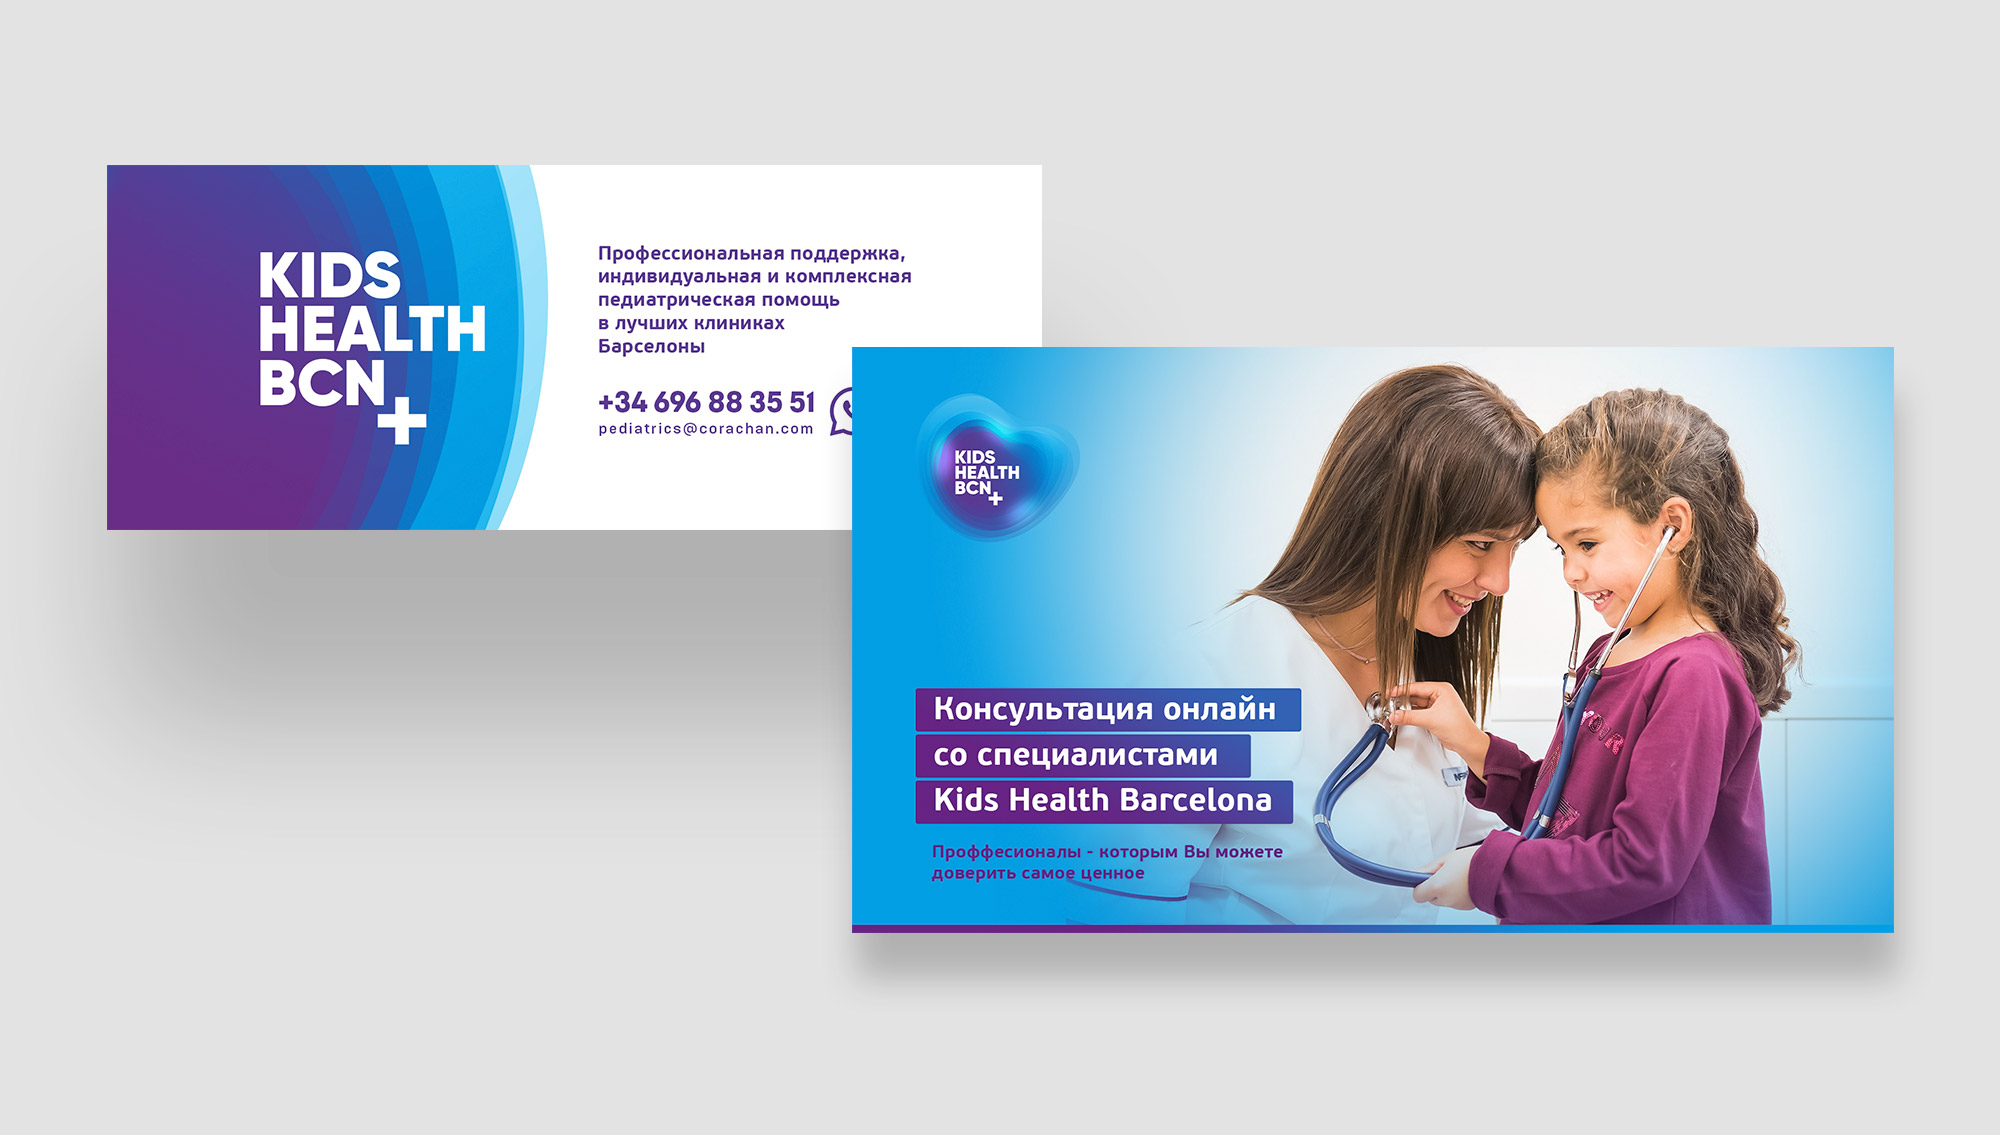 Creamos desde cero el proyecto Kids Health Barcelona que tiene por finalidad promover la unidad de pediatría de la clínica Corachan entre la audiencia de habla rusa.